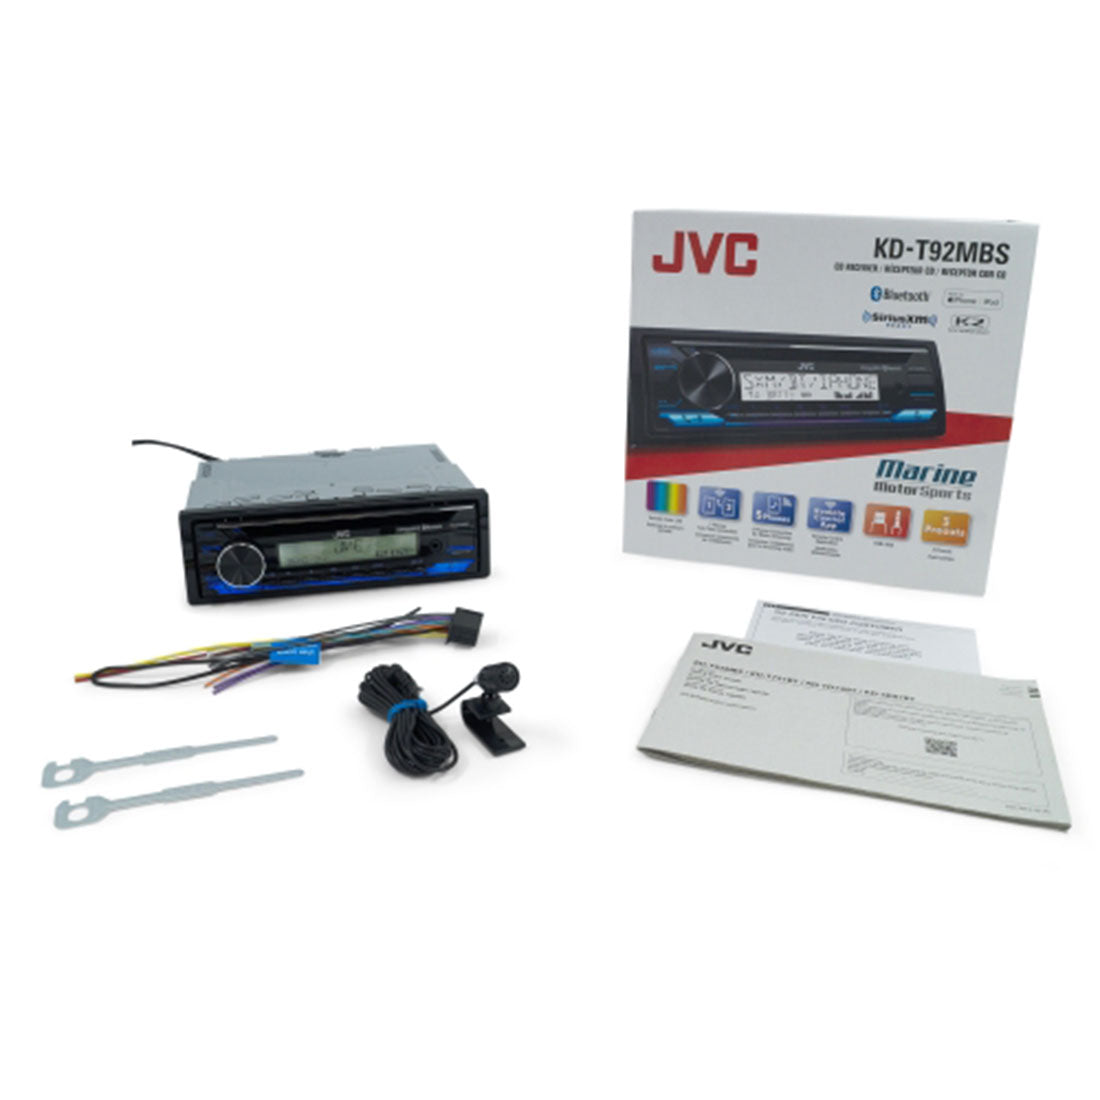 JVC KD-T92MBS Marine/MotorSports CD Receiver